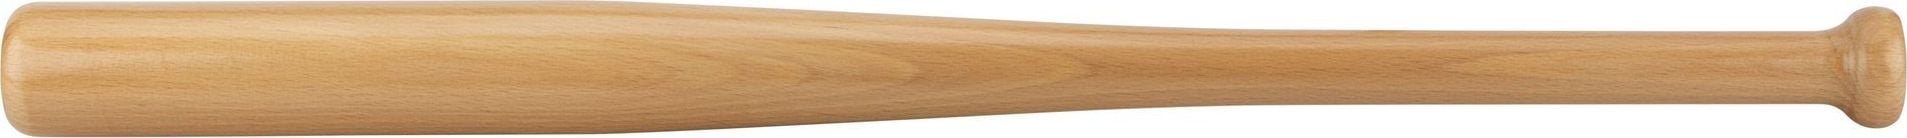 Avento Bâtă de baseball din lemn Avento 63cm uni